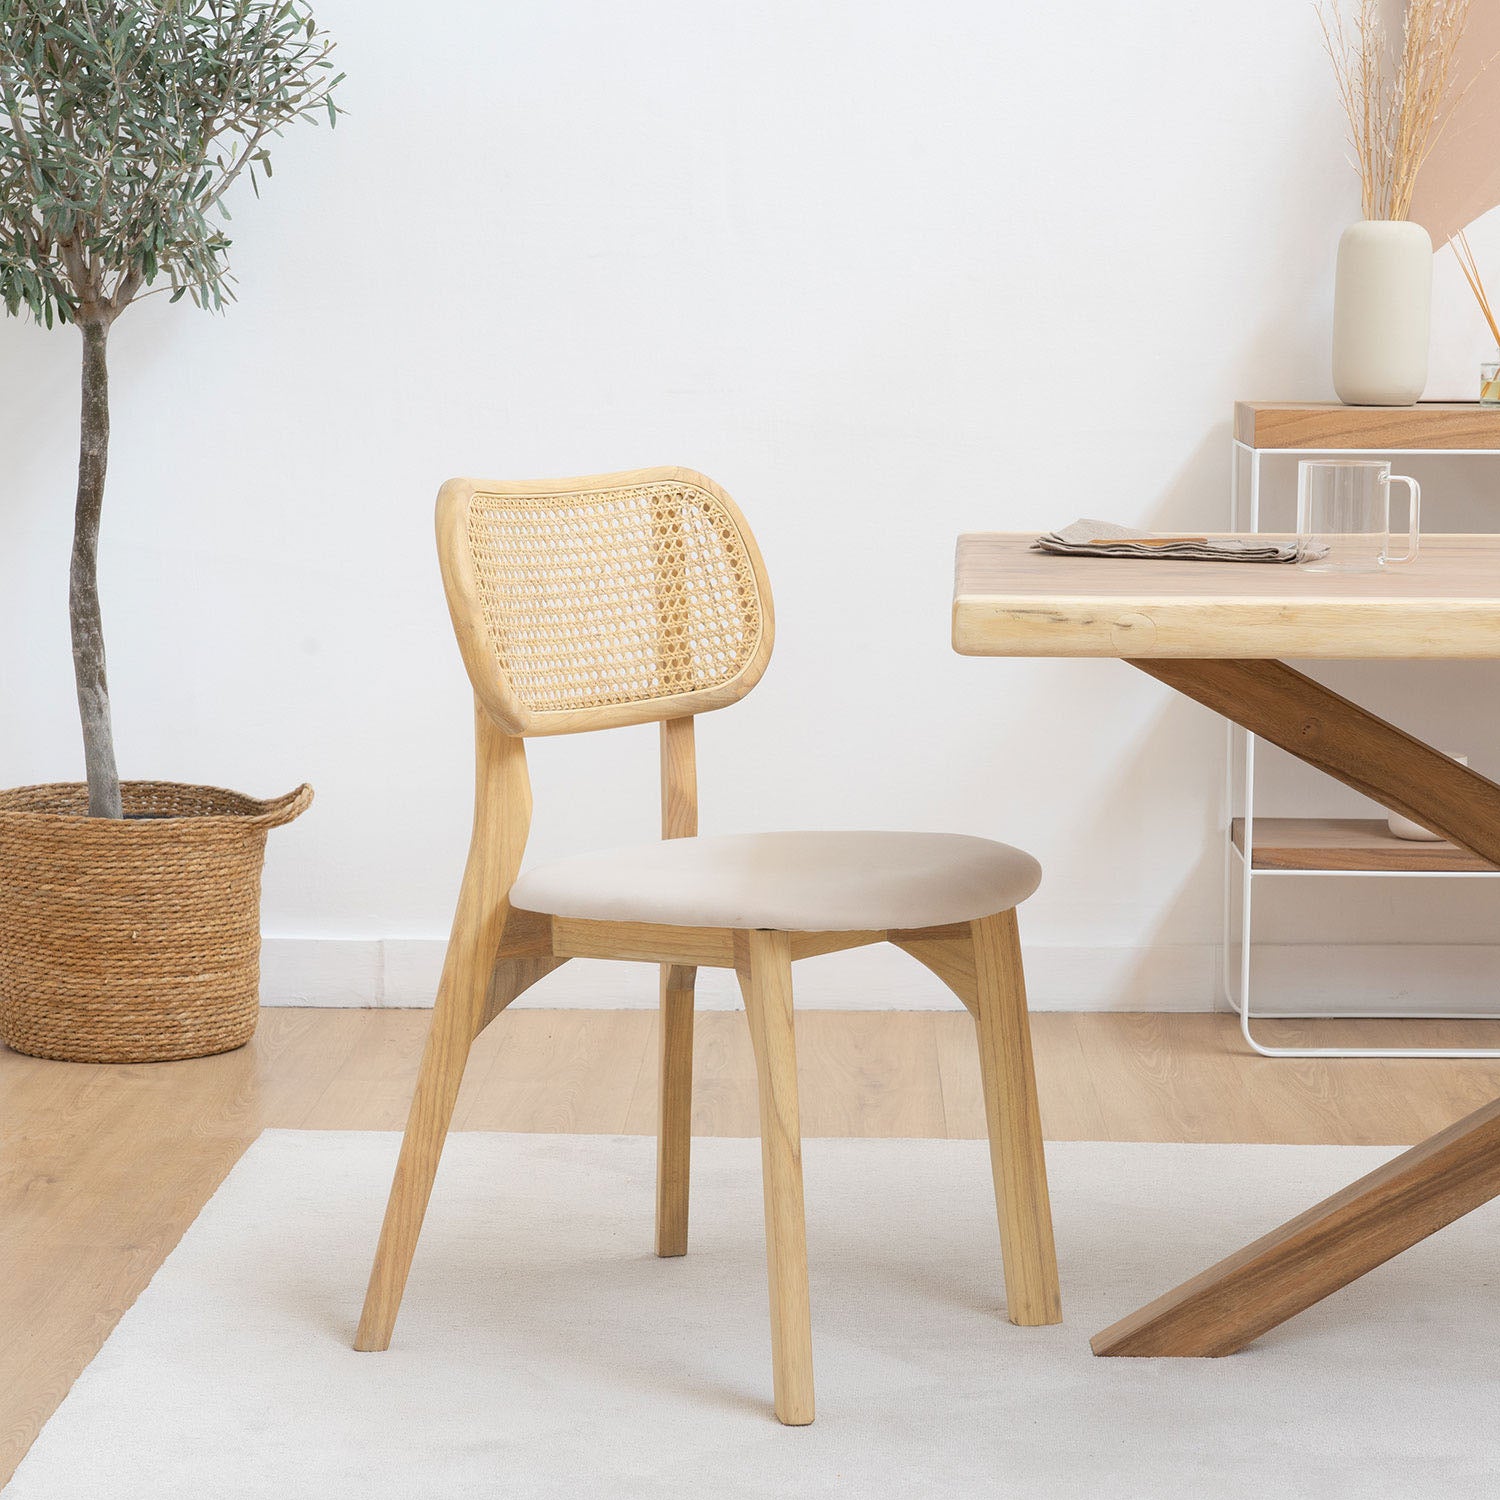 Muebles comedor rústicos; Sillas y mesas de diseños únicos - Wabi Home